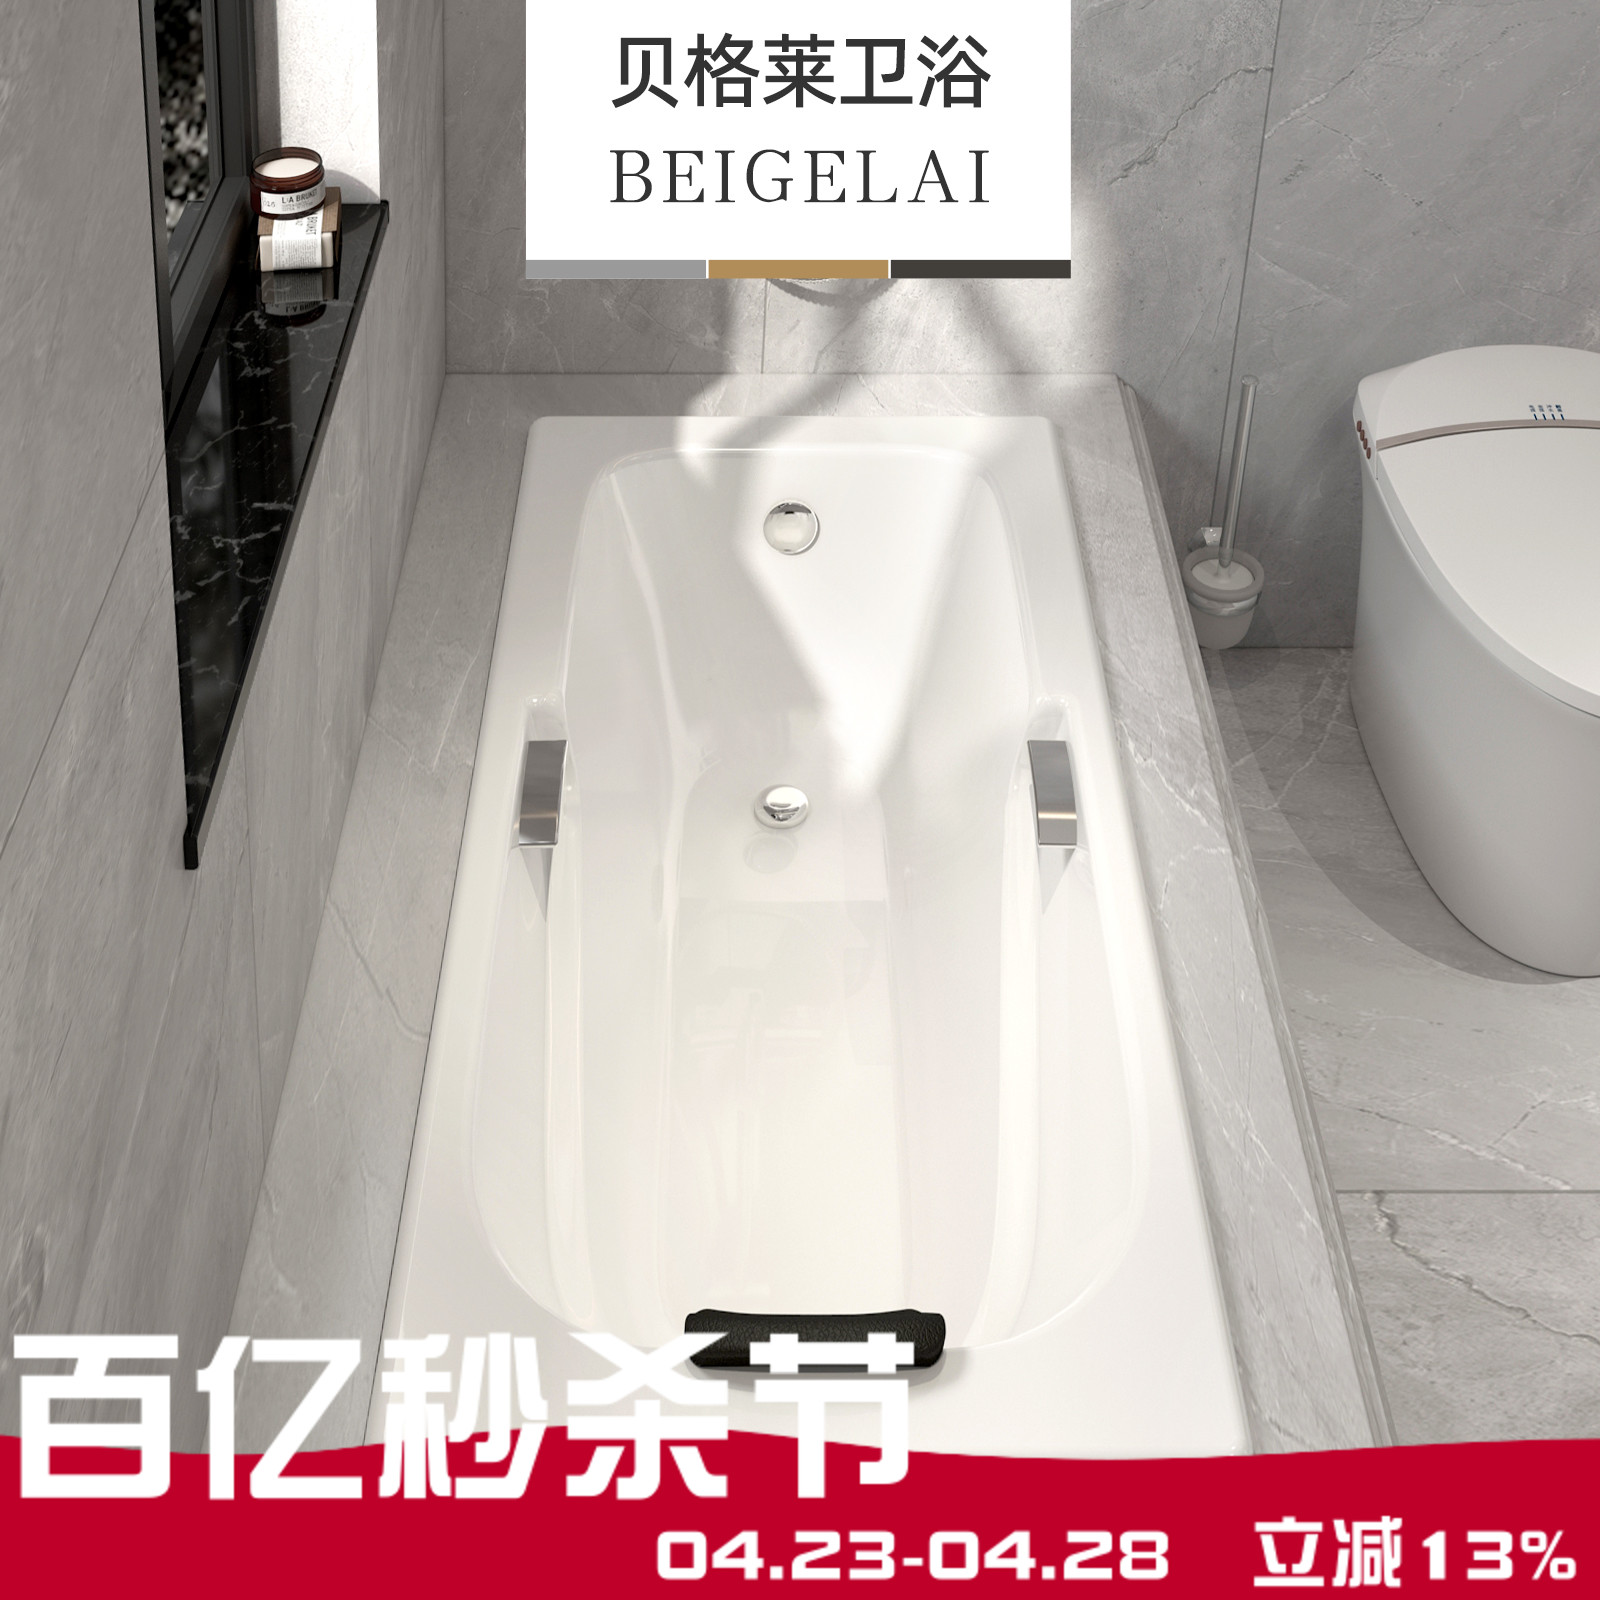 民宿酒店别墅豪华铸铁陶瓷嵌入式浴缸家用成人搪瓷方形深泡贝格莱